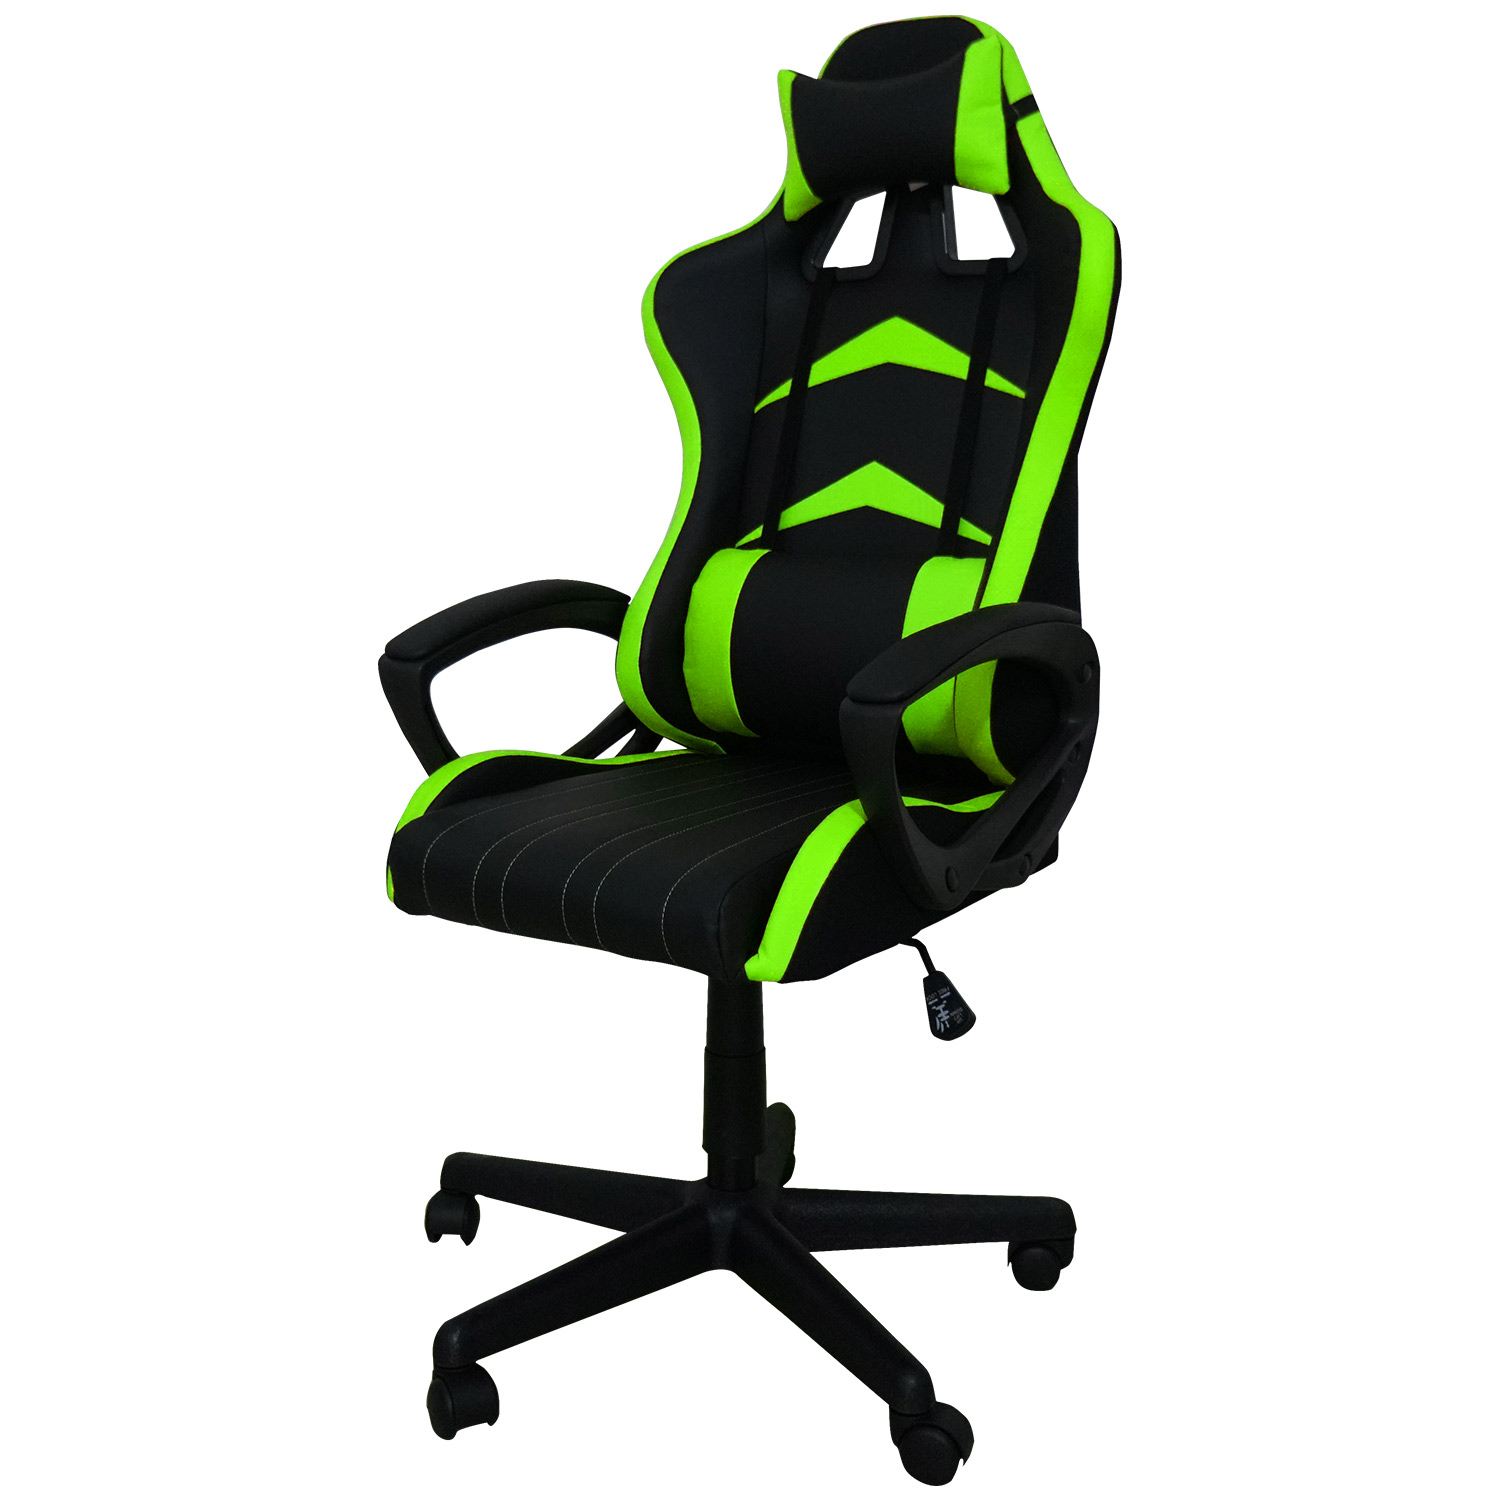 Poltrona sedia gaming verde e nera ergonomica con schienale reclinabile